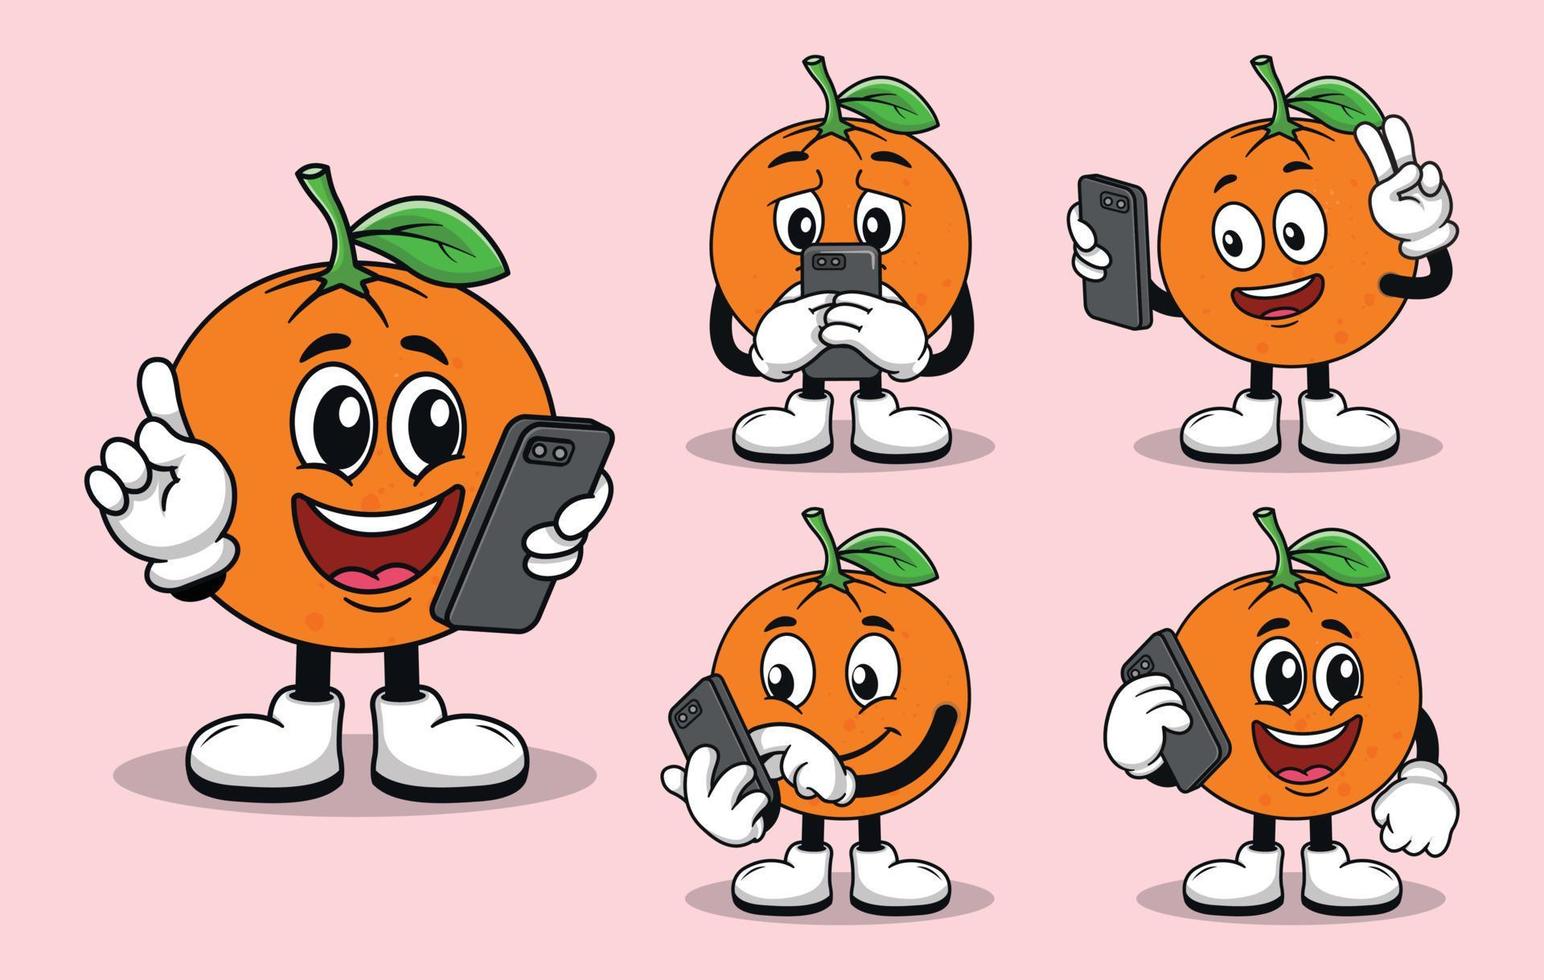 mascote de fruta laranja fofa com vários tipos de coleção de conjuntos de expressões vetor